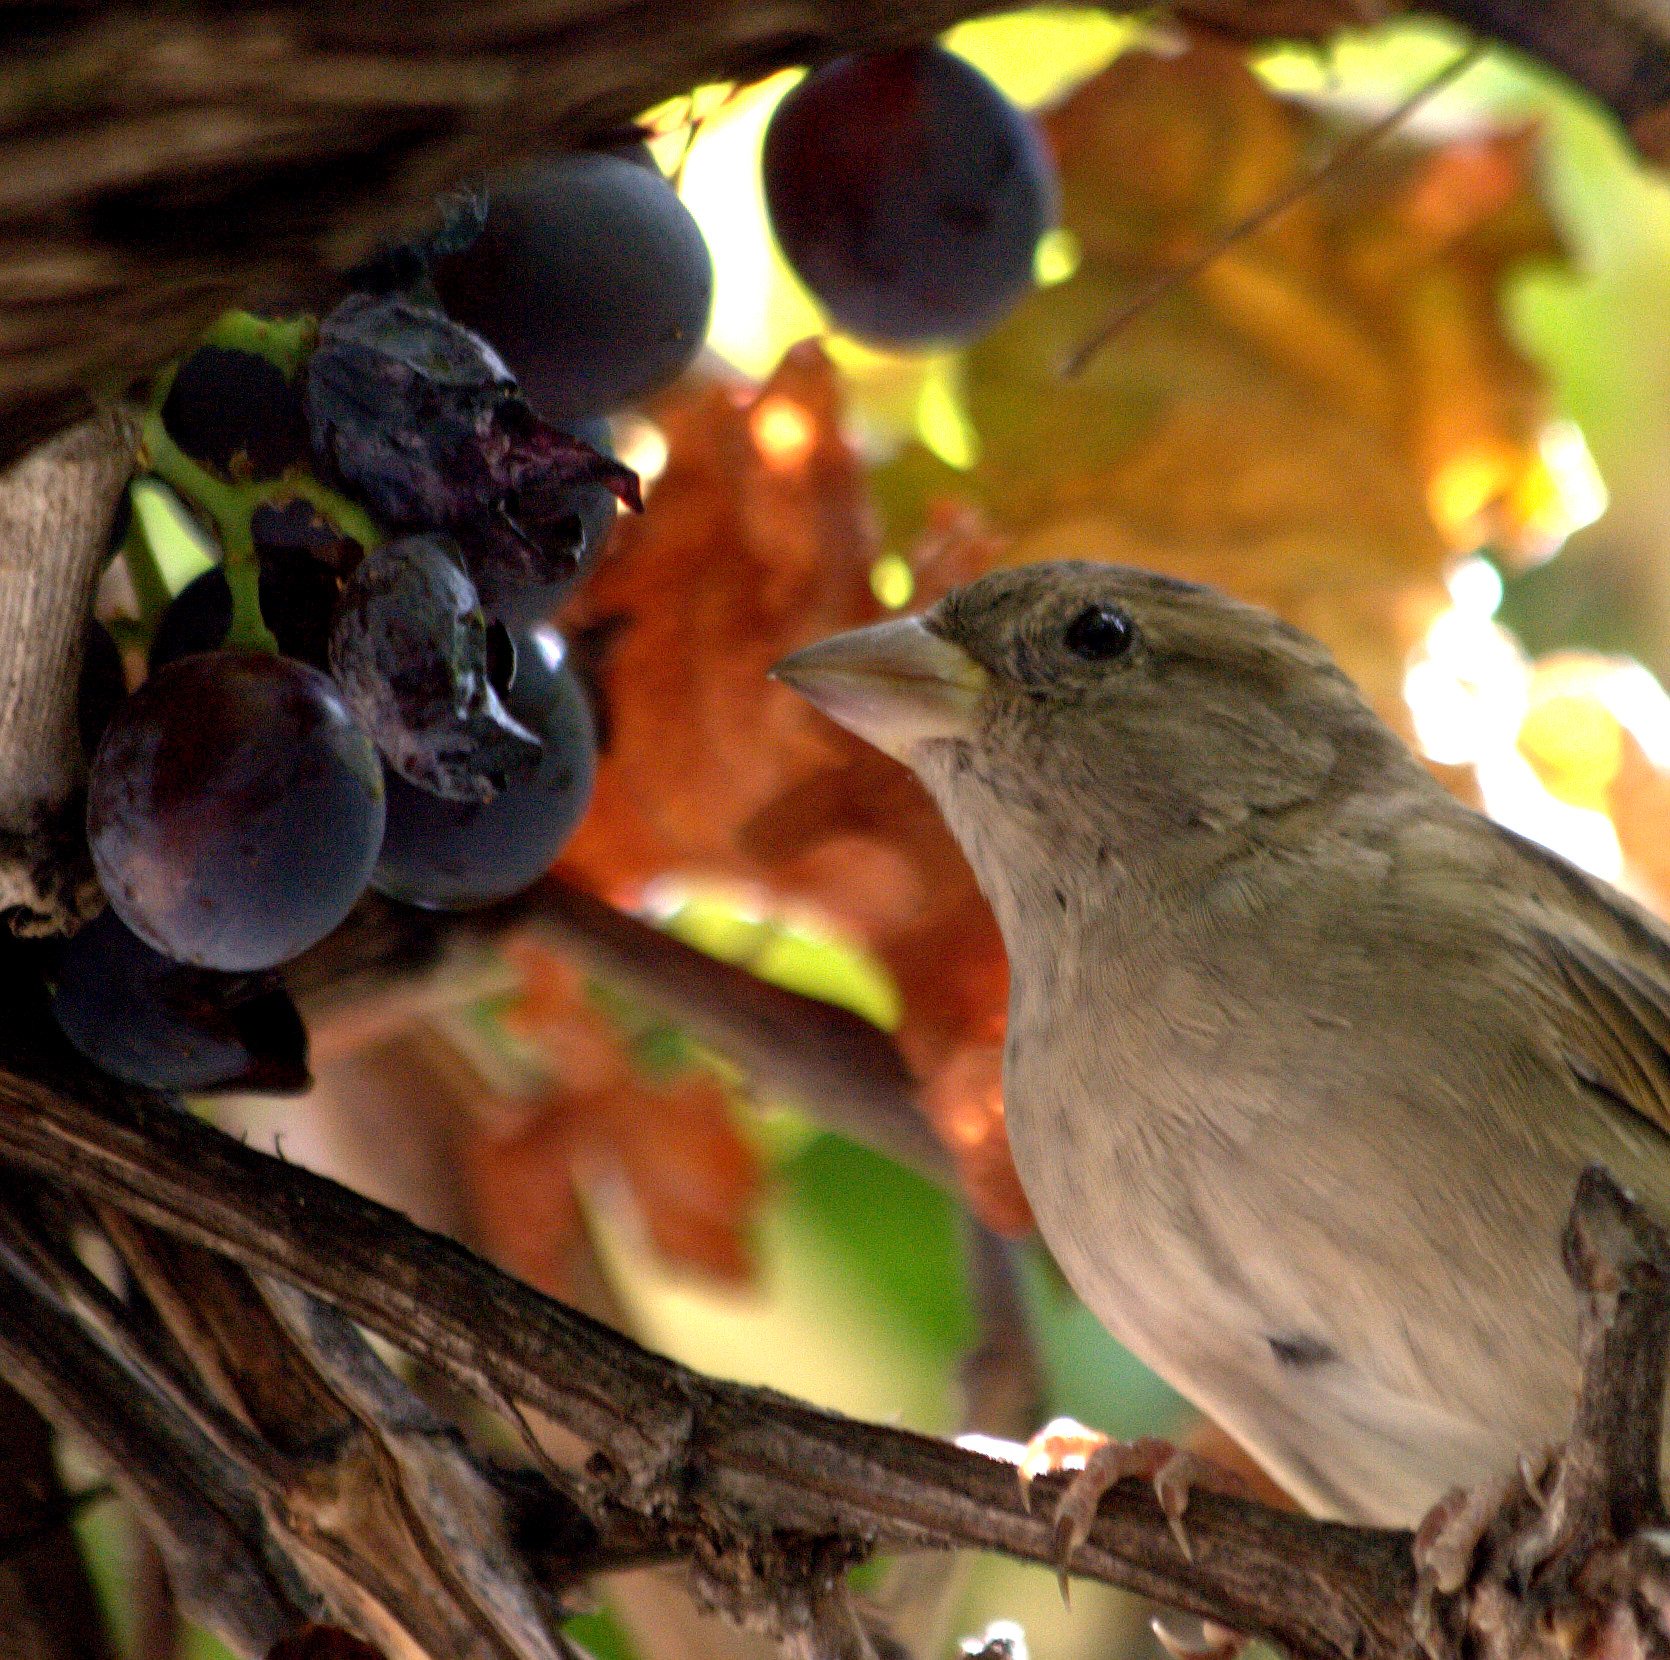 Sparrow et raisins. raisins Cast avec moineau, en retour, élimine les insectes.